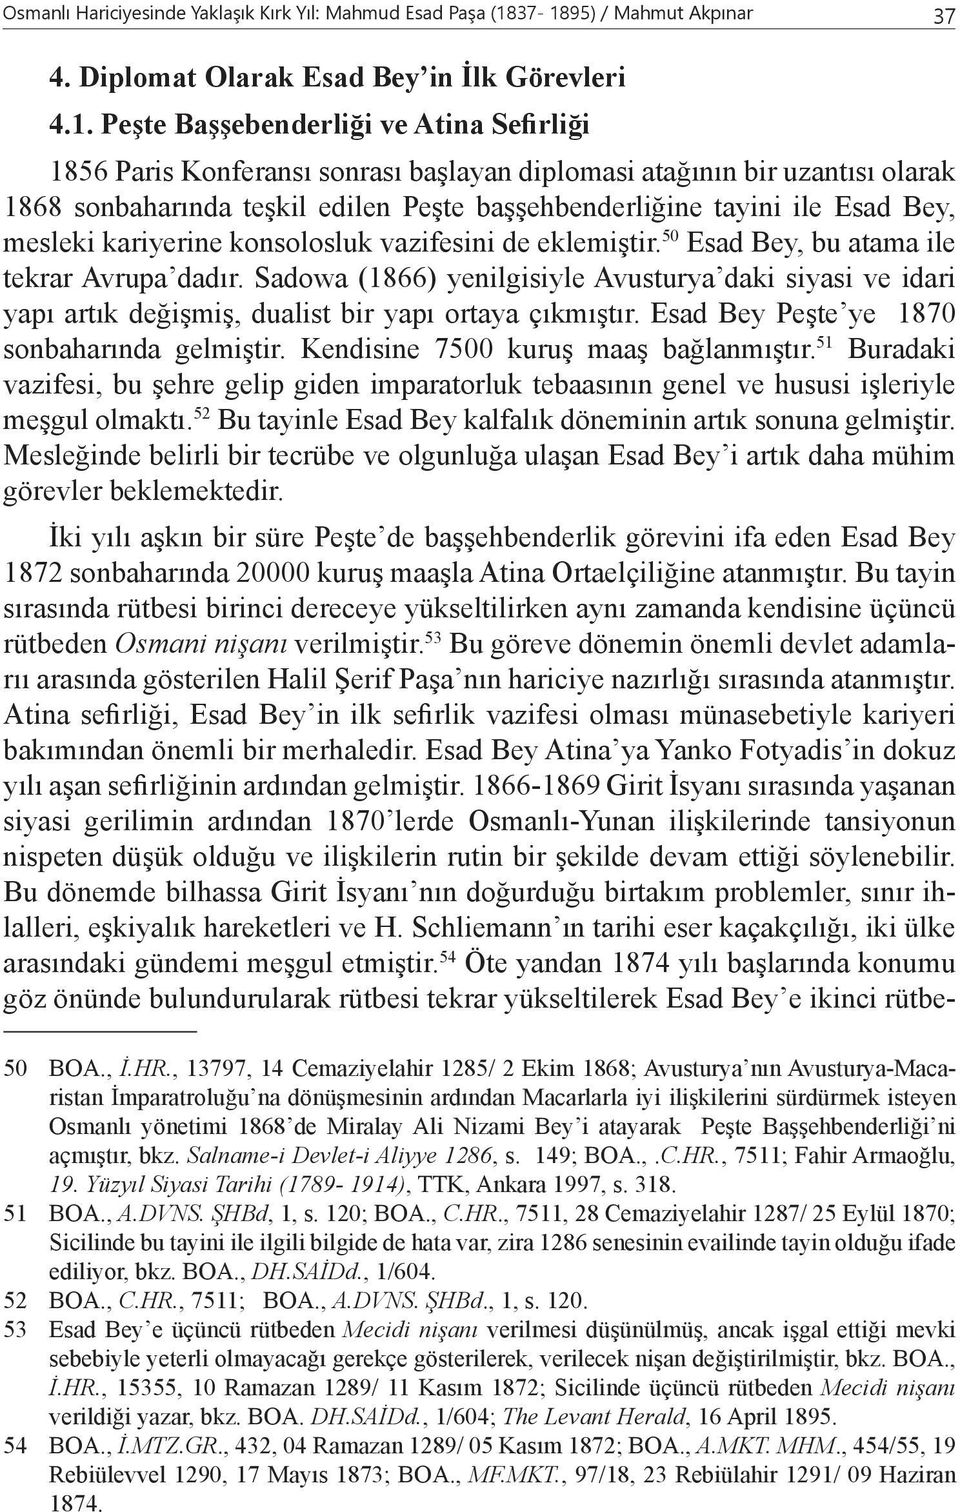 1868 sonbaharında teşkil edilen Peşte başşehbenderliğine tayini ile Esad Bey, mesleki kariyerine konsolosluk vazifesini de eklemiştir. 50 Esad Bey, bu atama ile tekrar Avrupa dadır.